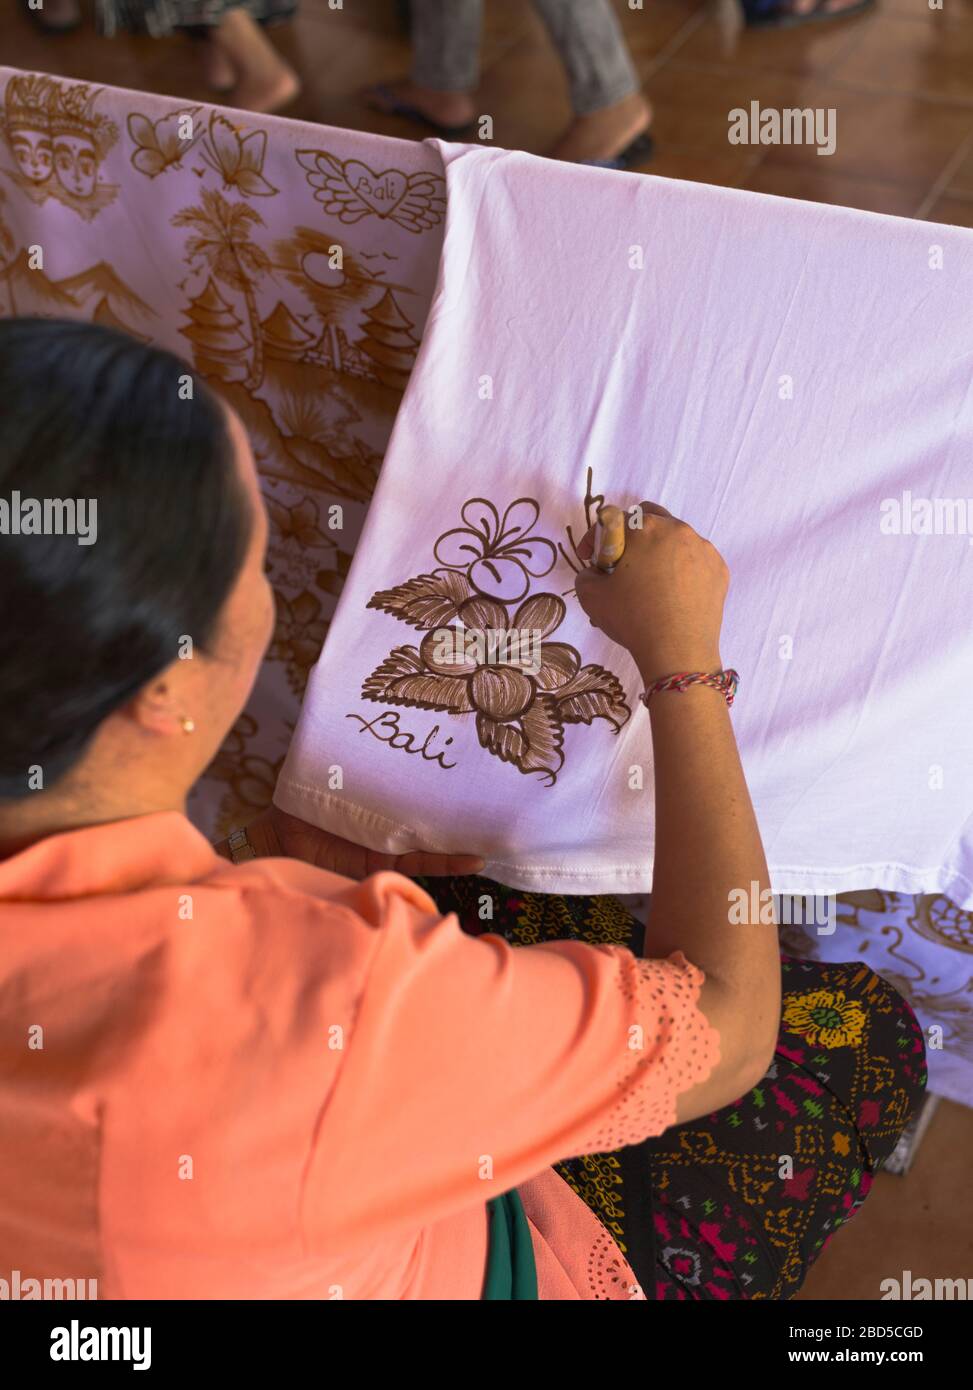 dh balinese donna lavoratore batik BALI INDONESIA Arte pittura Batik modello di cera calda su donne di stoffa indonesiana asia popolazione sud design dell'asia orientale Foto Stock